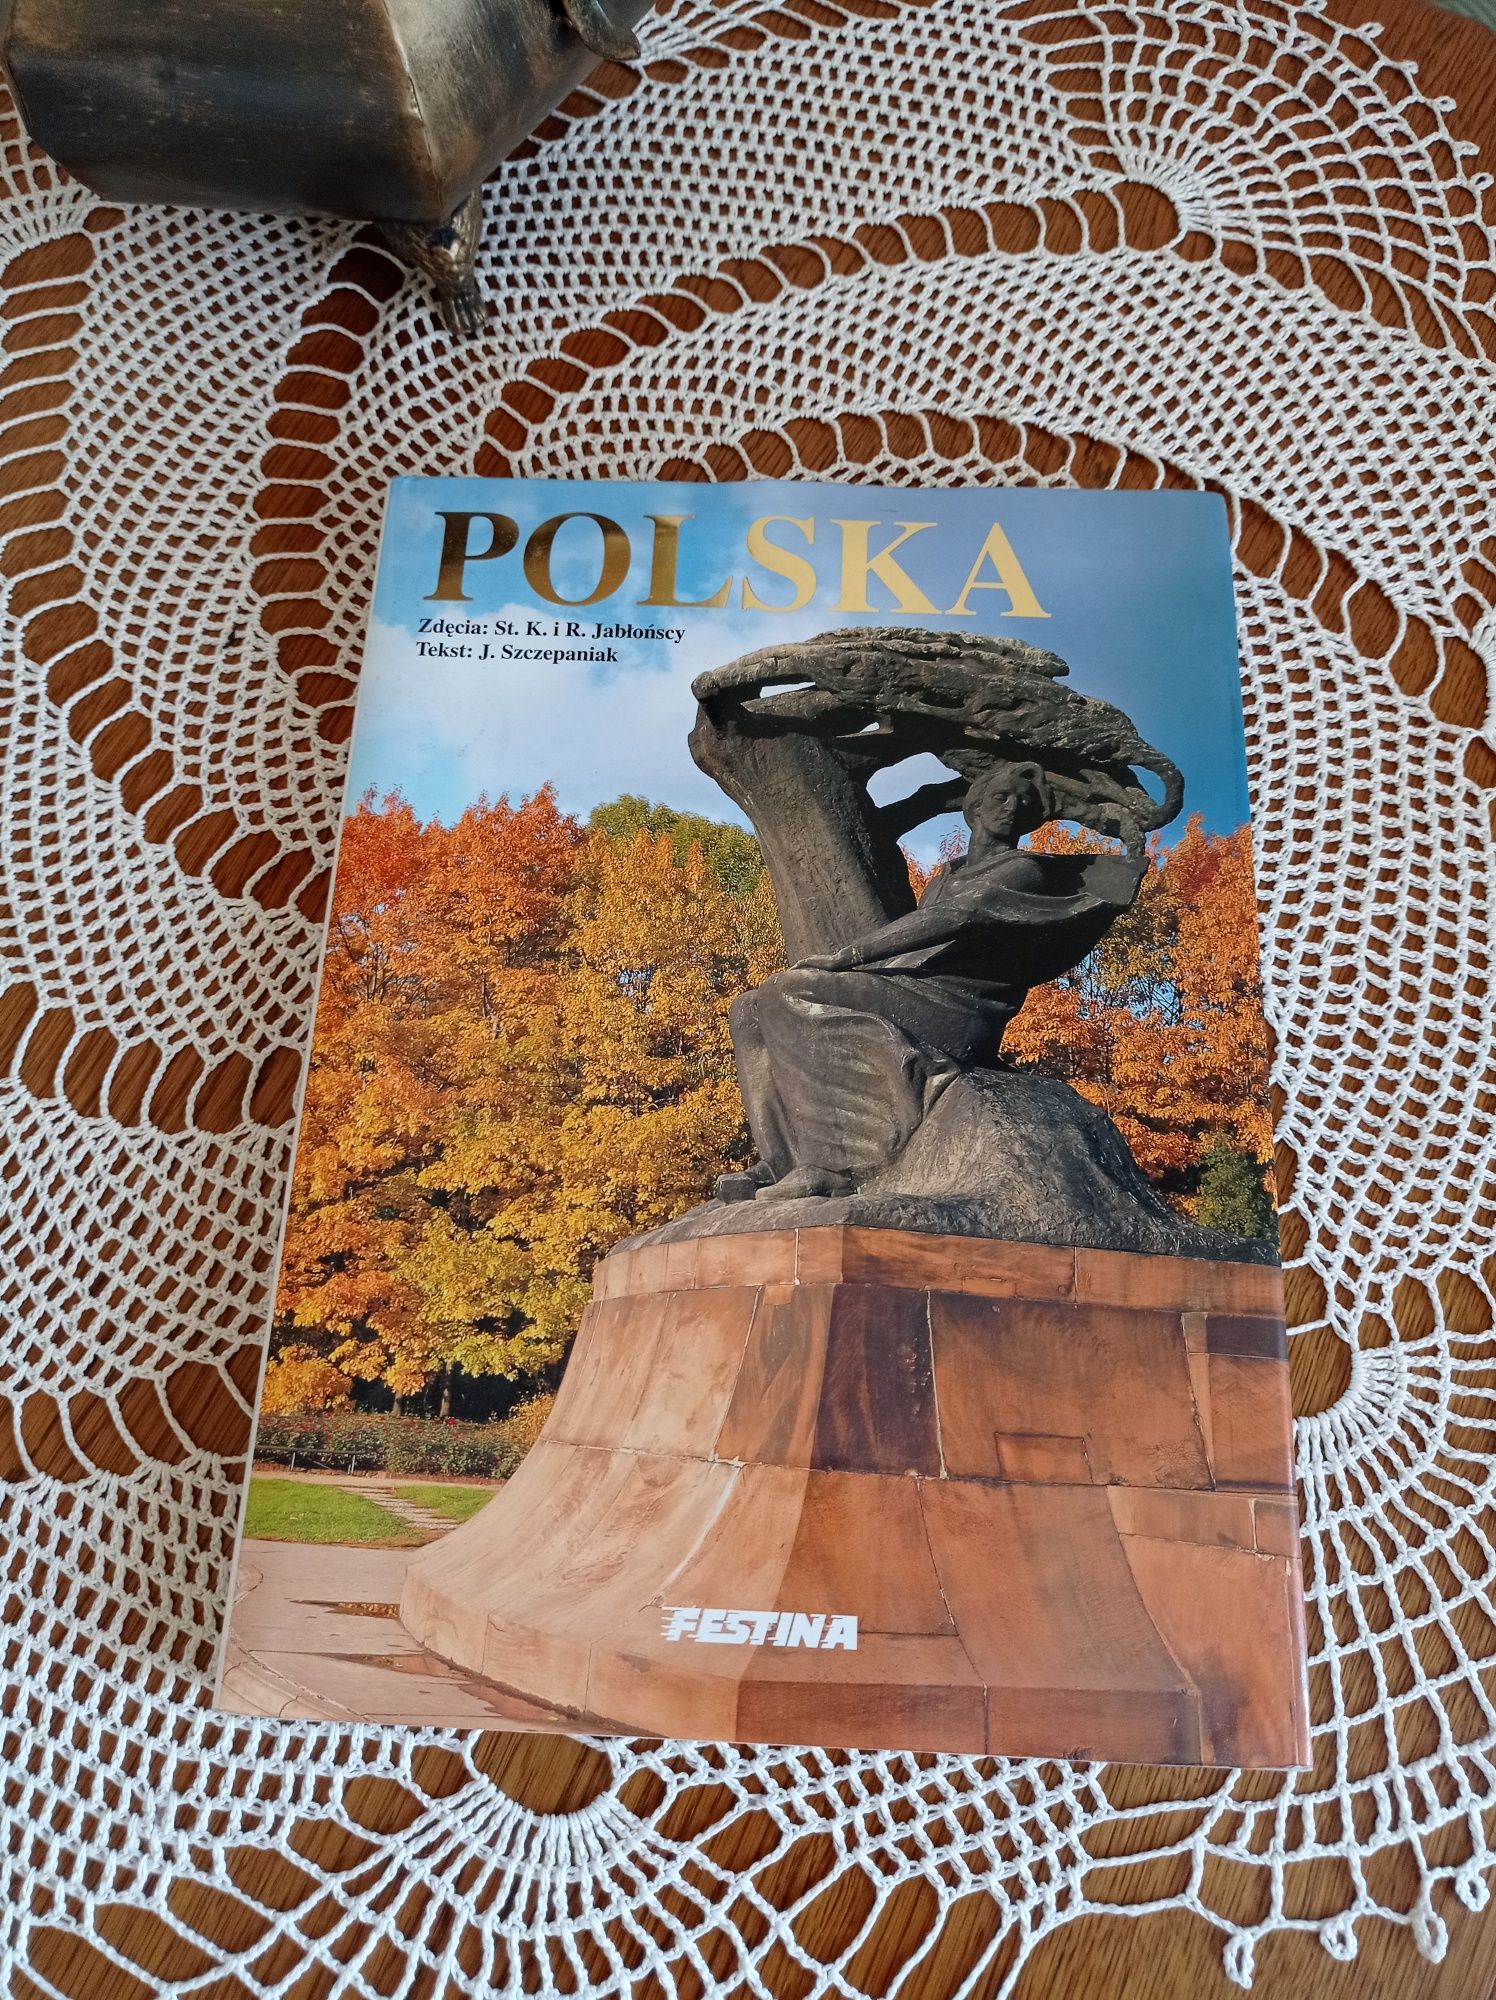 Pięknie wydany album Polska - Festina